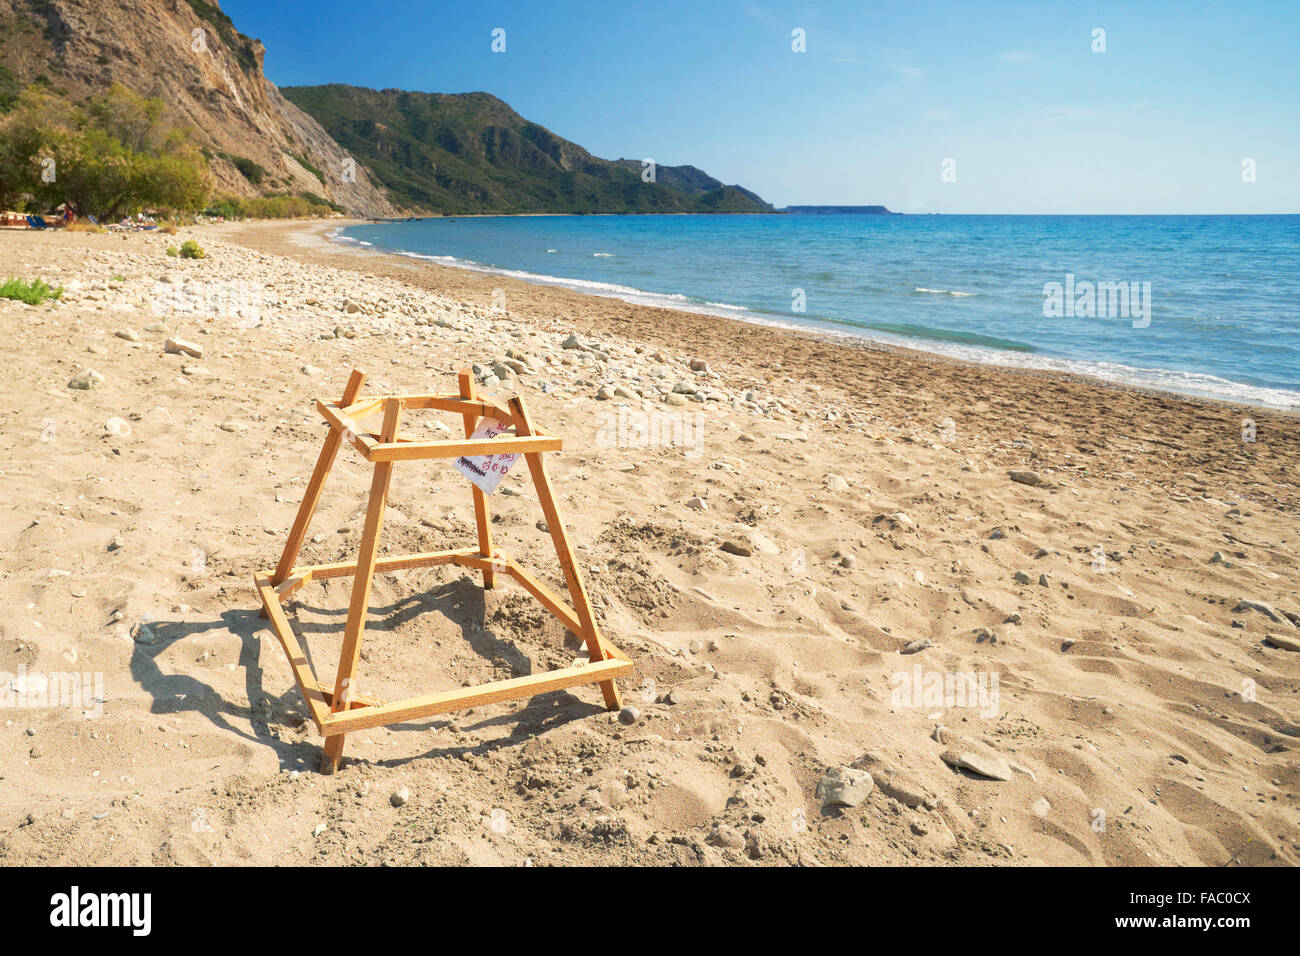 Griechenland - Insel Zakynthos, Ionische Meer, Gerakas Strand, Marine Park - Meeresschildkröte Caretta legt seinen Eiern Stockfoto